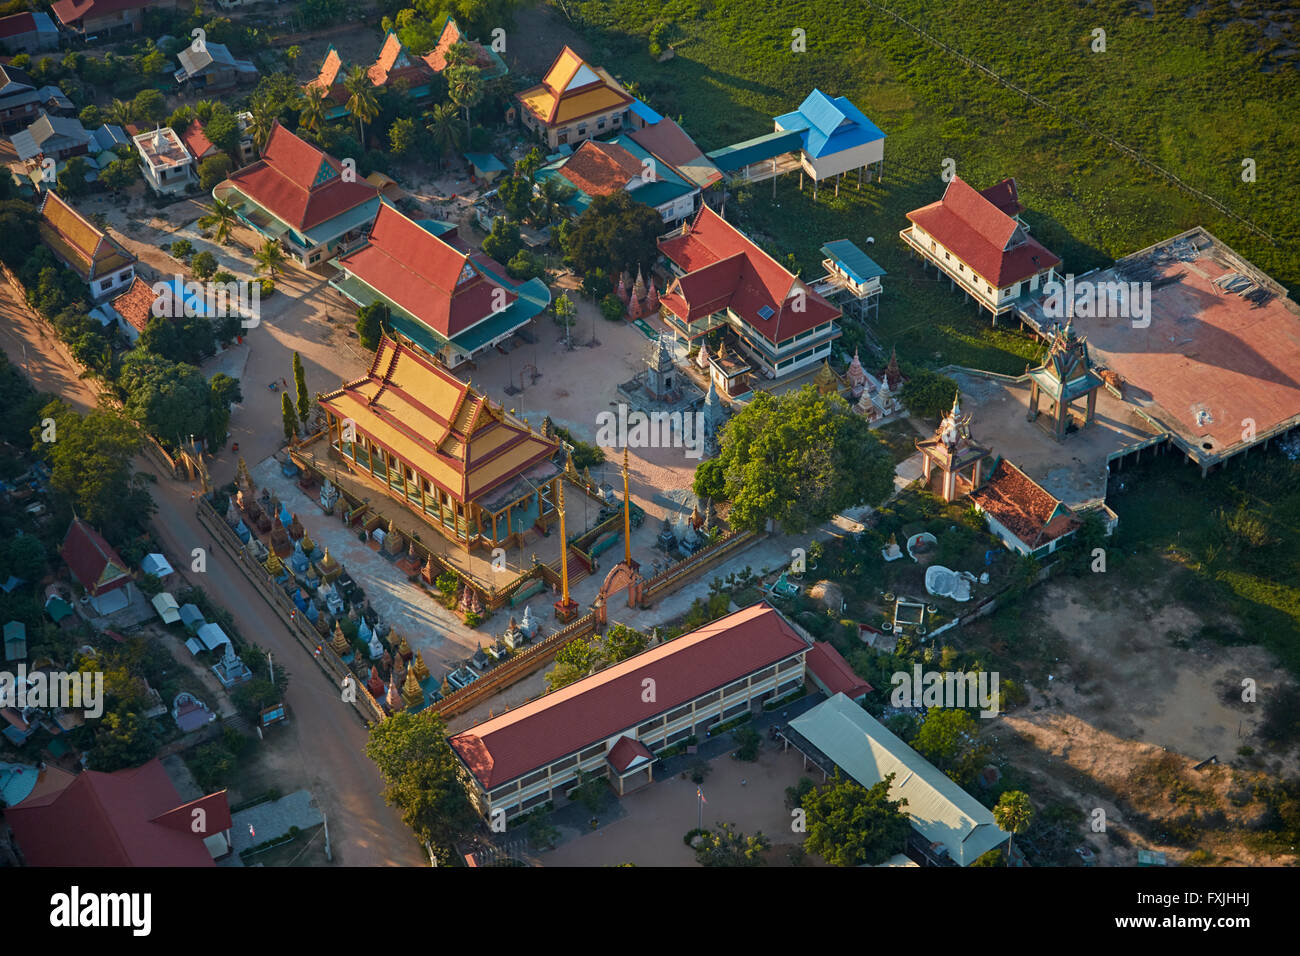 Centro Comunitario de la aldea de Suwon, Phnom Krom, cerca de Siem Reap, Camboya - antena Foto de stock